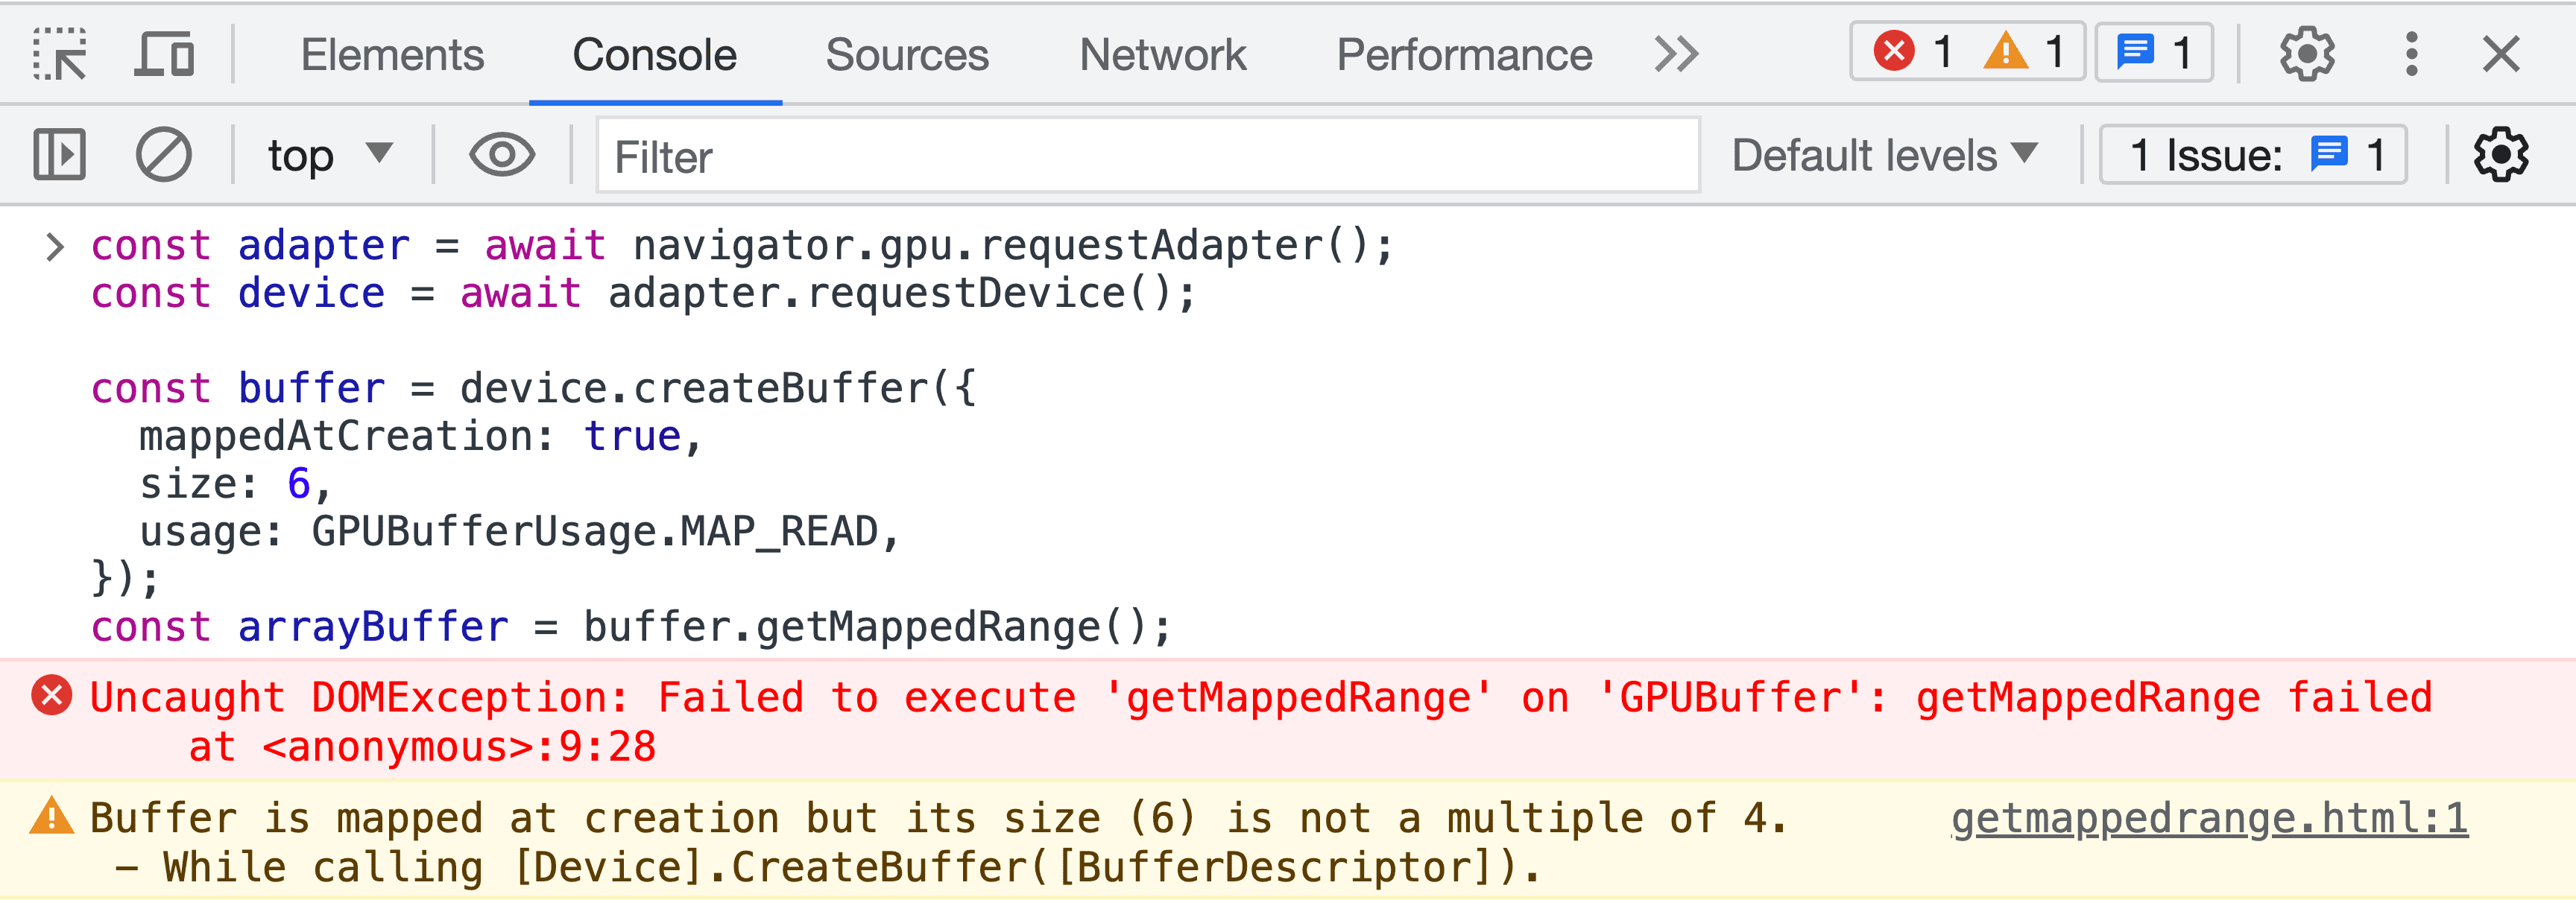 צילום מסך של מסוף JavaScript של כלי הפיתוח, עם הודעת שגיאה באימות מאגר הנתונים הזמני.